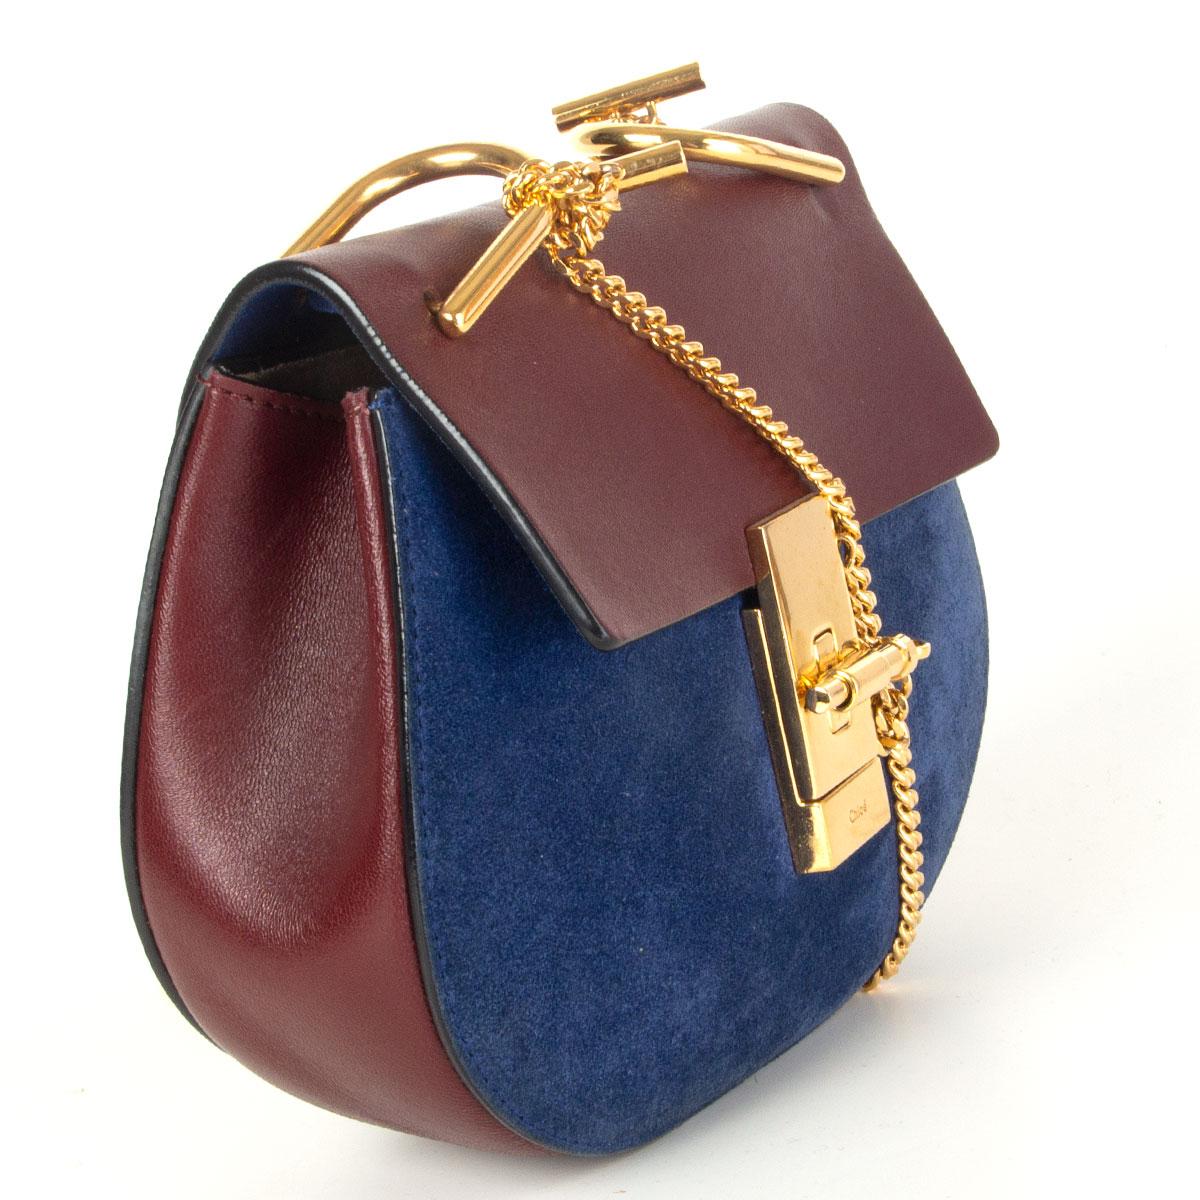 Authentique sac à bandoulière 'Drew Mini' de Chloé en daim bleu et cuir de veau bordeaux, orné de ferrures dorées. Il s'ouvre à l'aide d'un rabat fermé par une épingle et un fermoir. Il n'est pas doublé et comporte une poche ouverte au dos. Elle a